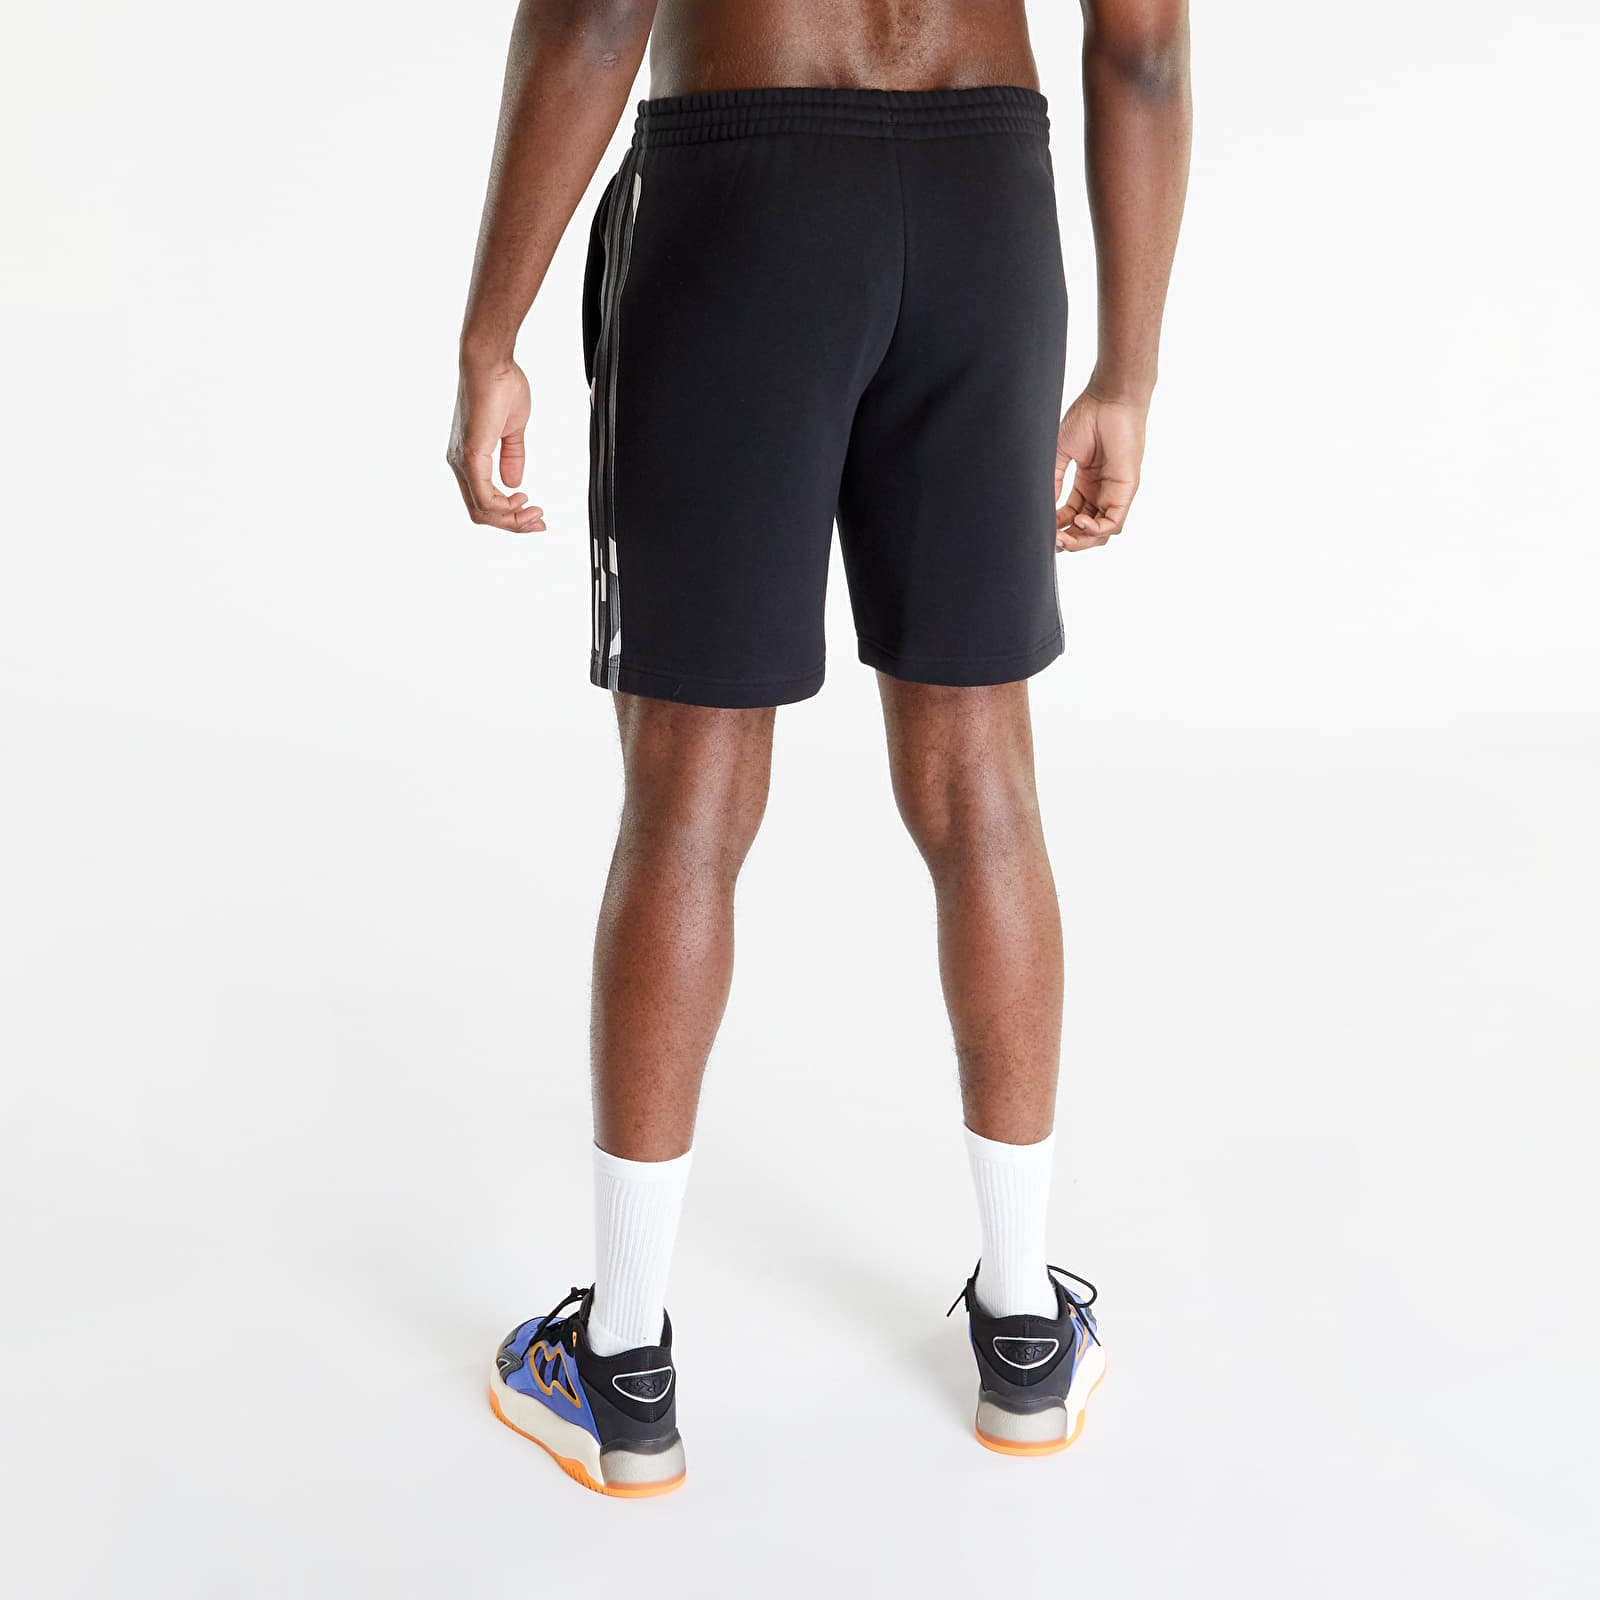 Camo Shorts 3-Stripes Black Graphics adidas Short | Originals Queens